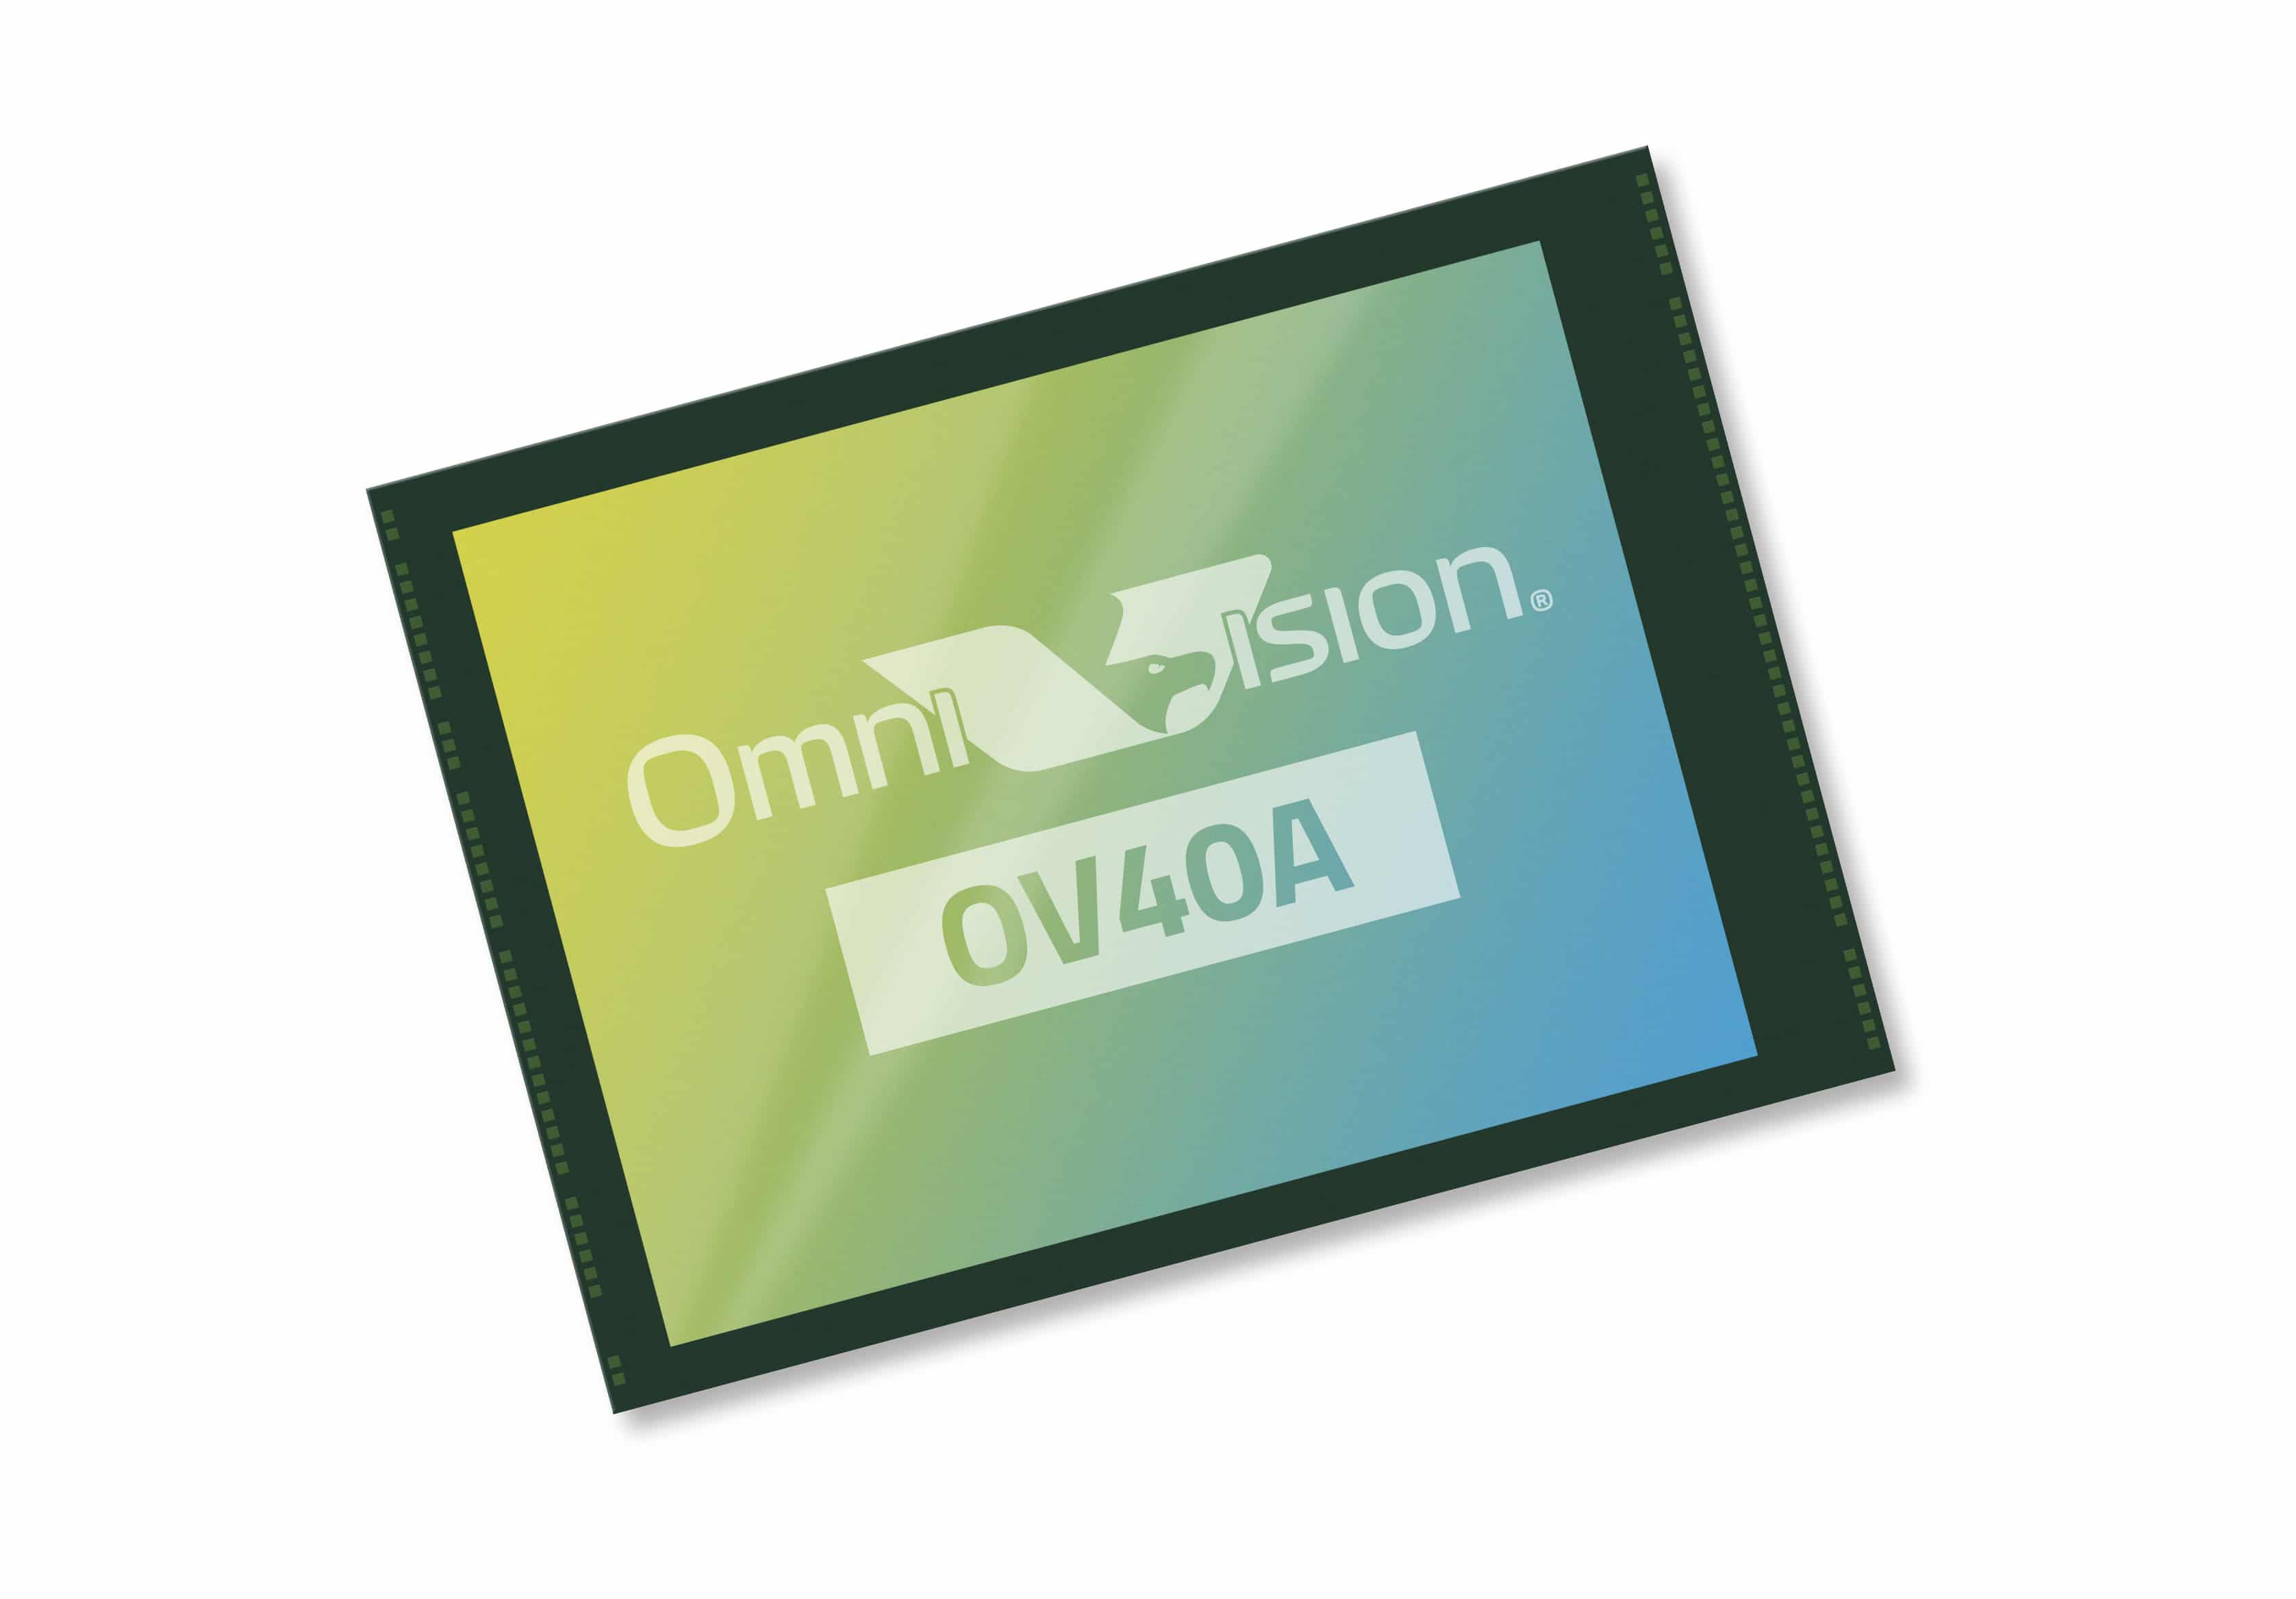 OmniVision ra mắt cảm biến máy ảnh smartphone với điểm ảnh 1.0 micron